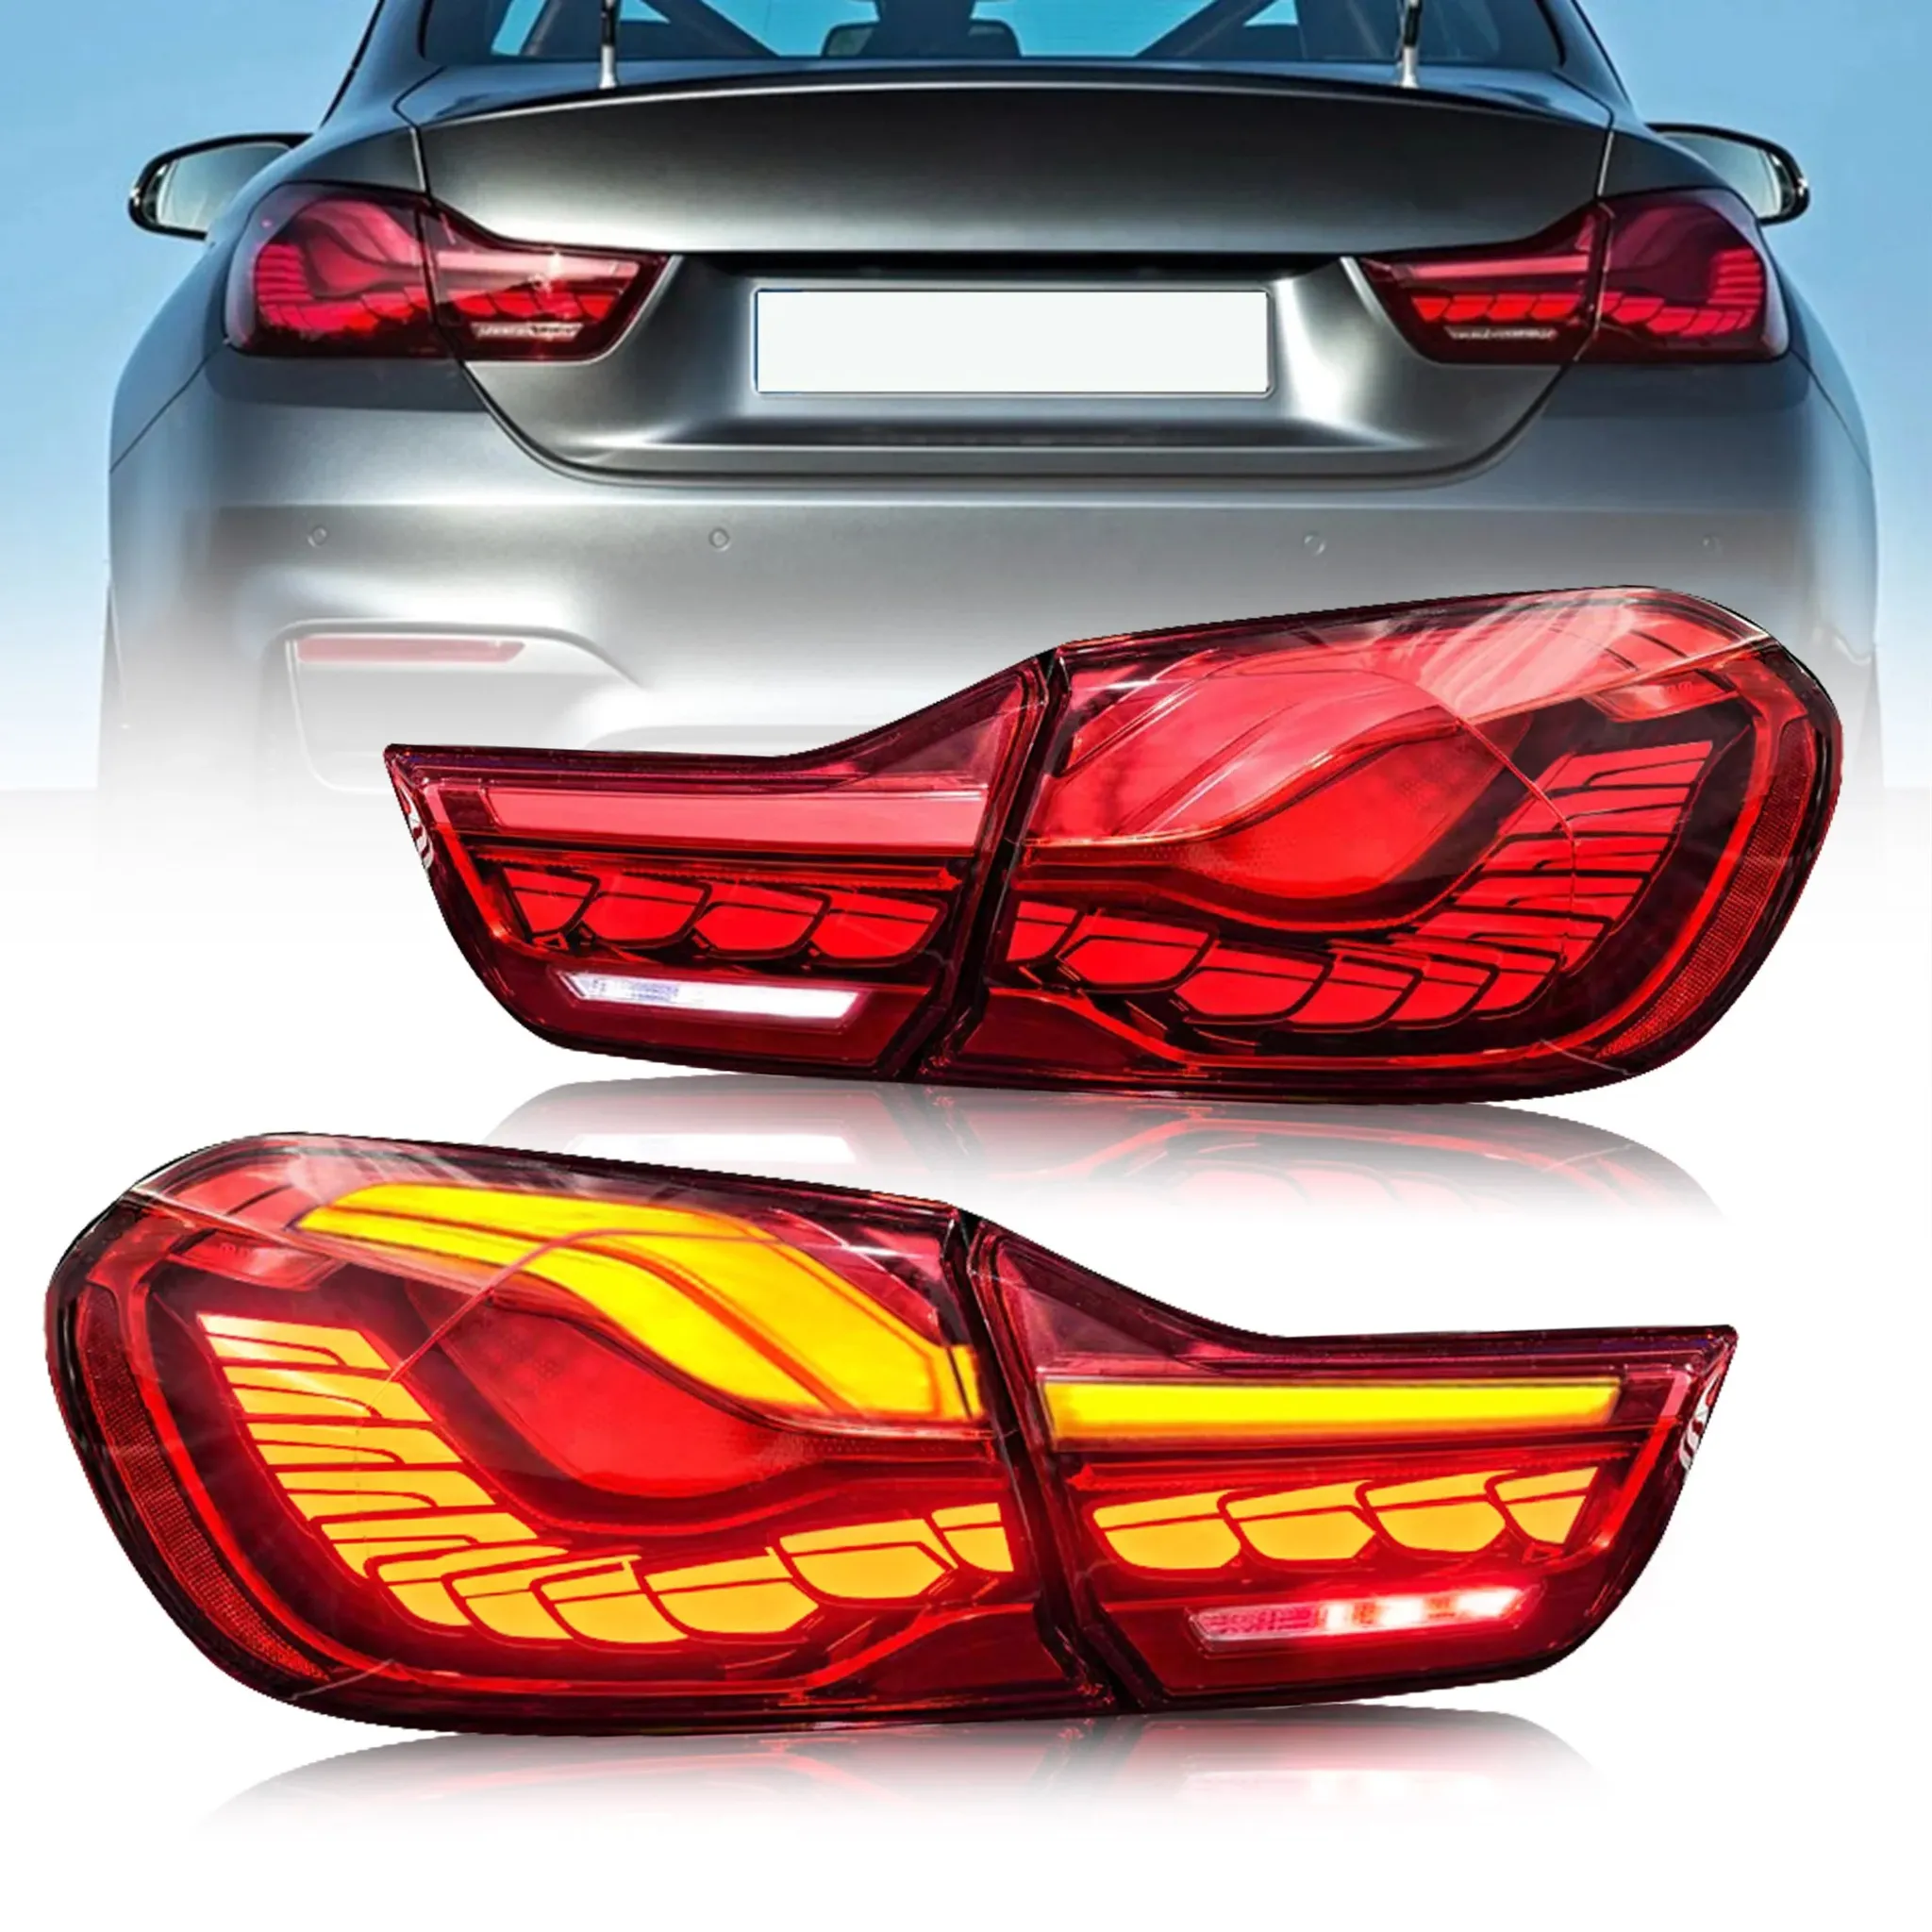 LED Rückleuchten SET Smoke dynamische Blinker OLED Funktion passt für BMW  5er F10 Limousine